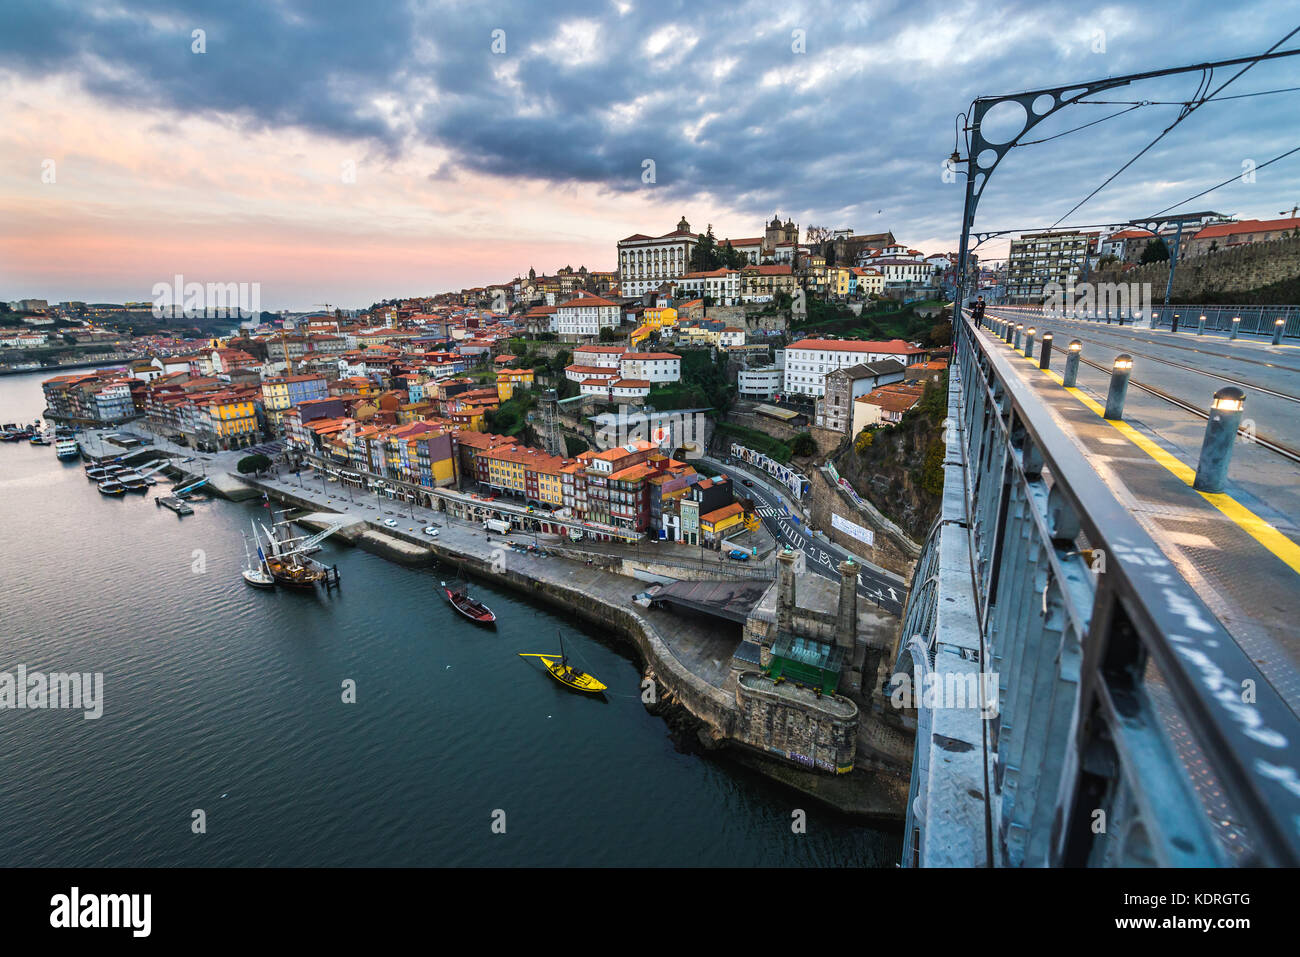 Veduta aerea della città di Porto sulla penisola iberica, seconda città più grande del Portogallo Foto Stock